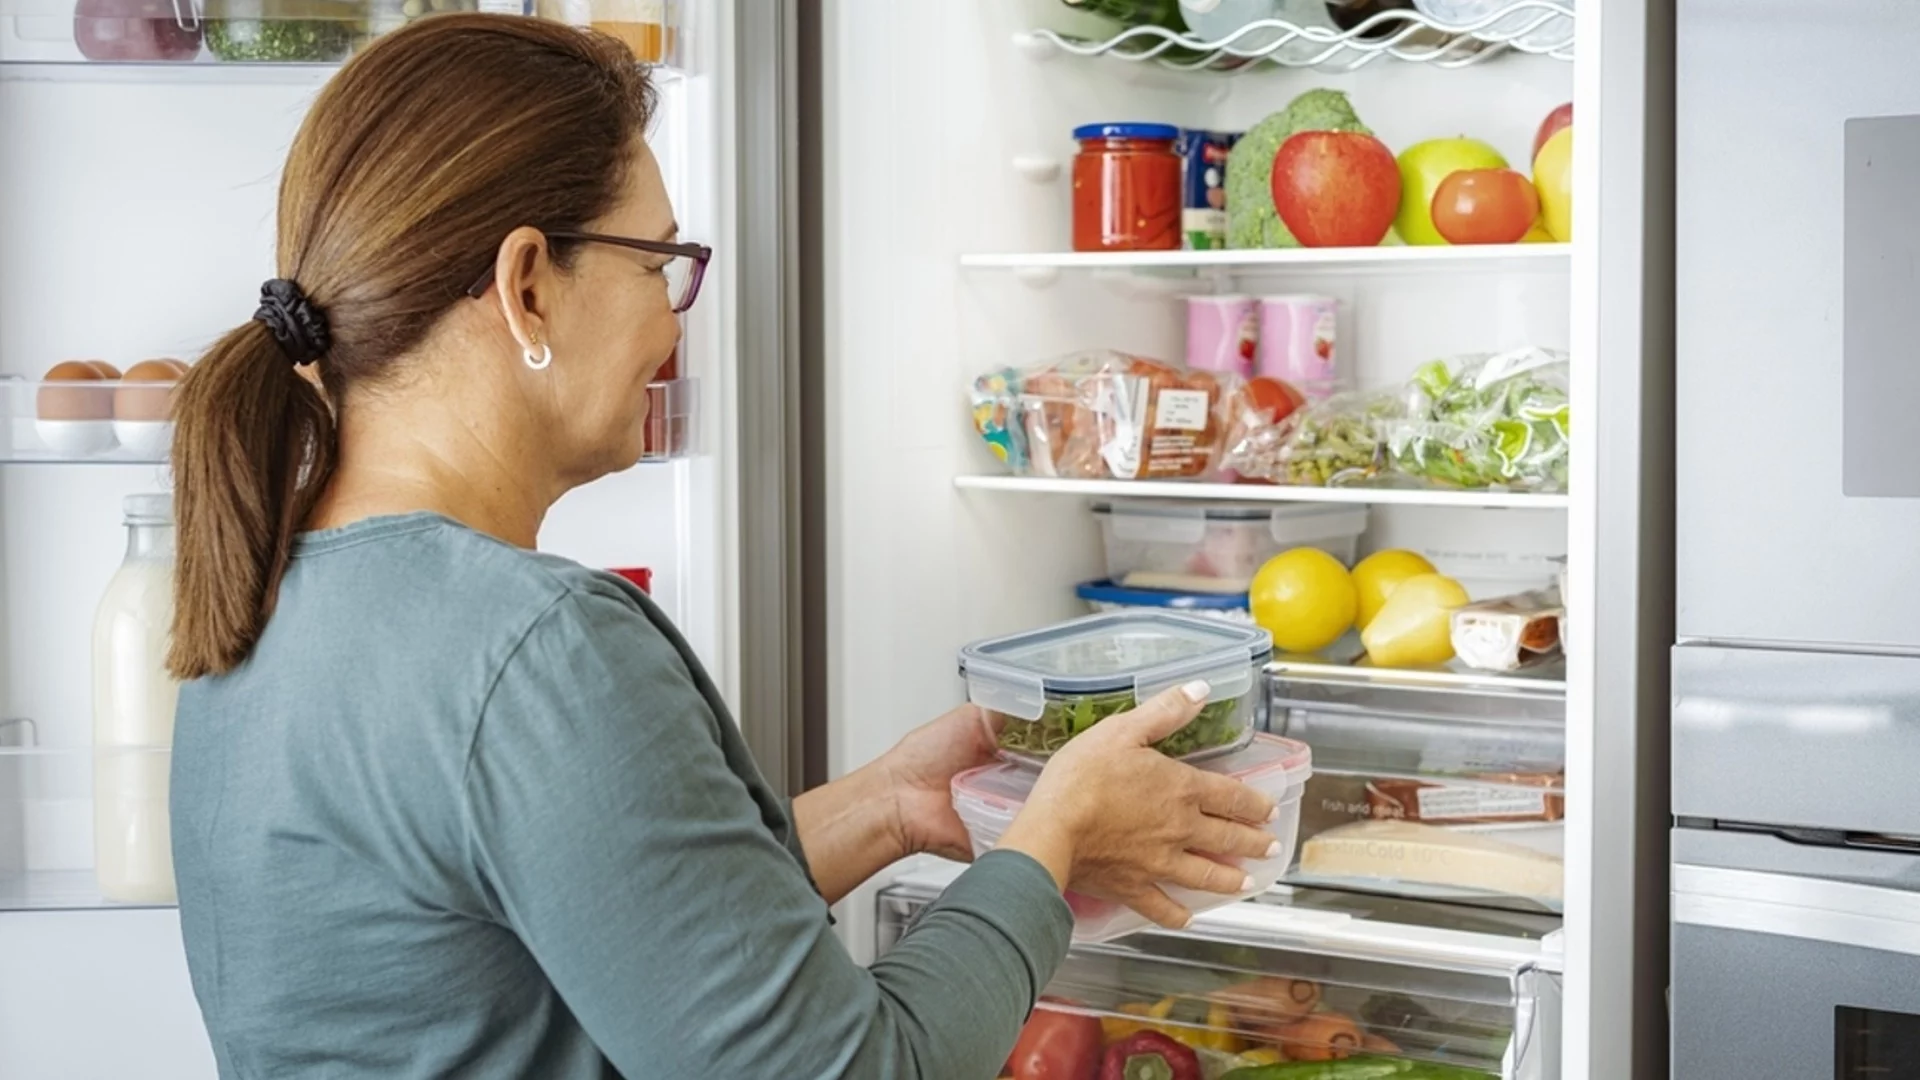 Правила за съхранение на храна в хладилника през лятото: много домакини не ги знаят